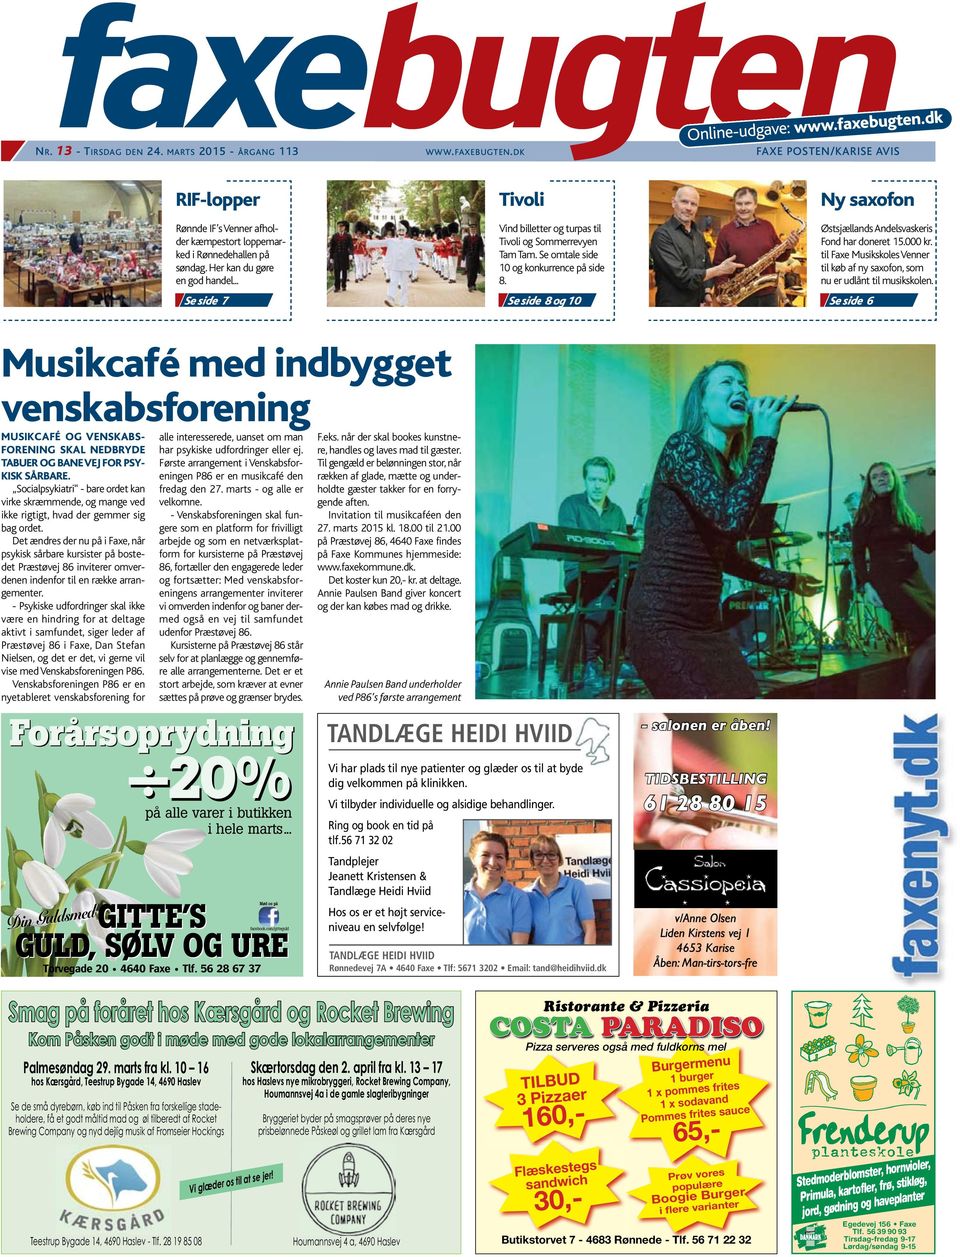 Se side 8 og 10 Ny saxofon Østsjællands Andelsvaskeris Fond har doneret 15.000 kr. til Faxe Musikskoles Venner til køb af ny saxofon, som nu er udlånt til musikskolen.